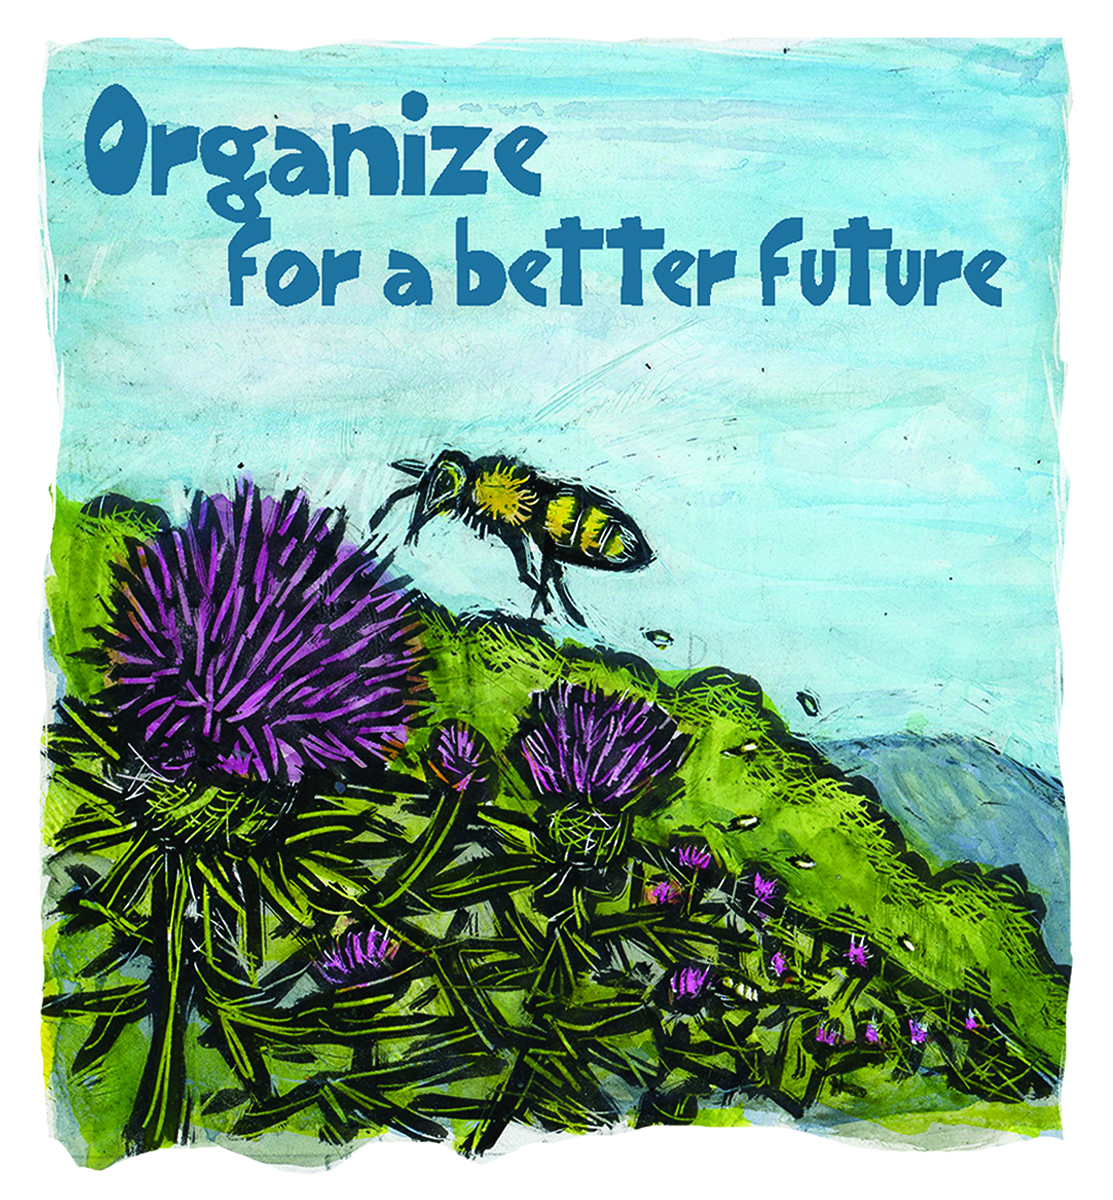 组织更美好未来蜜蜂